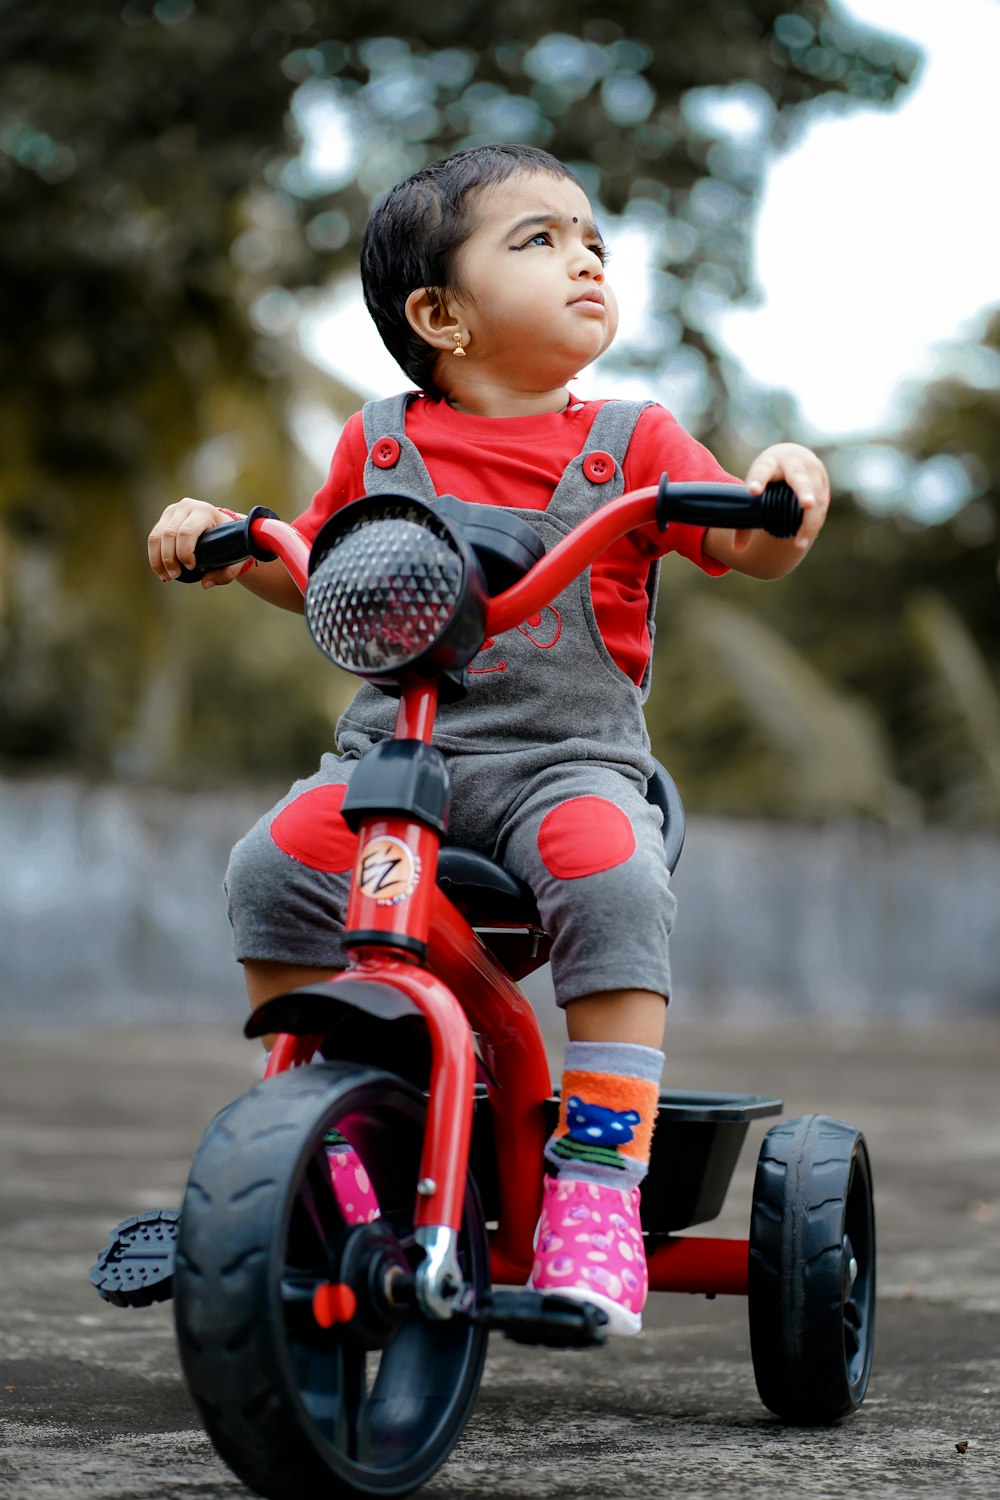 Kind im roten Hemd fährt rotes und schwarzes Motorradspielzeug